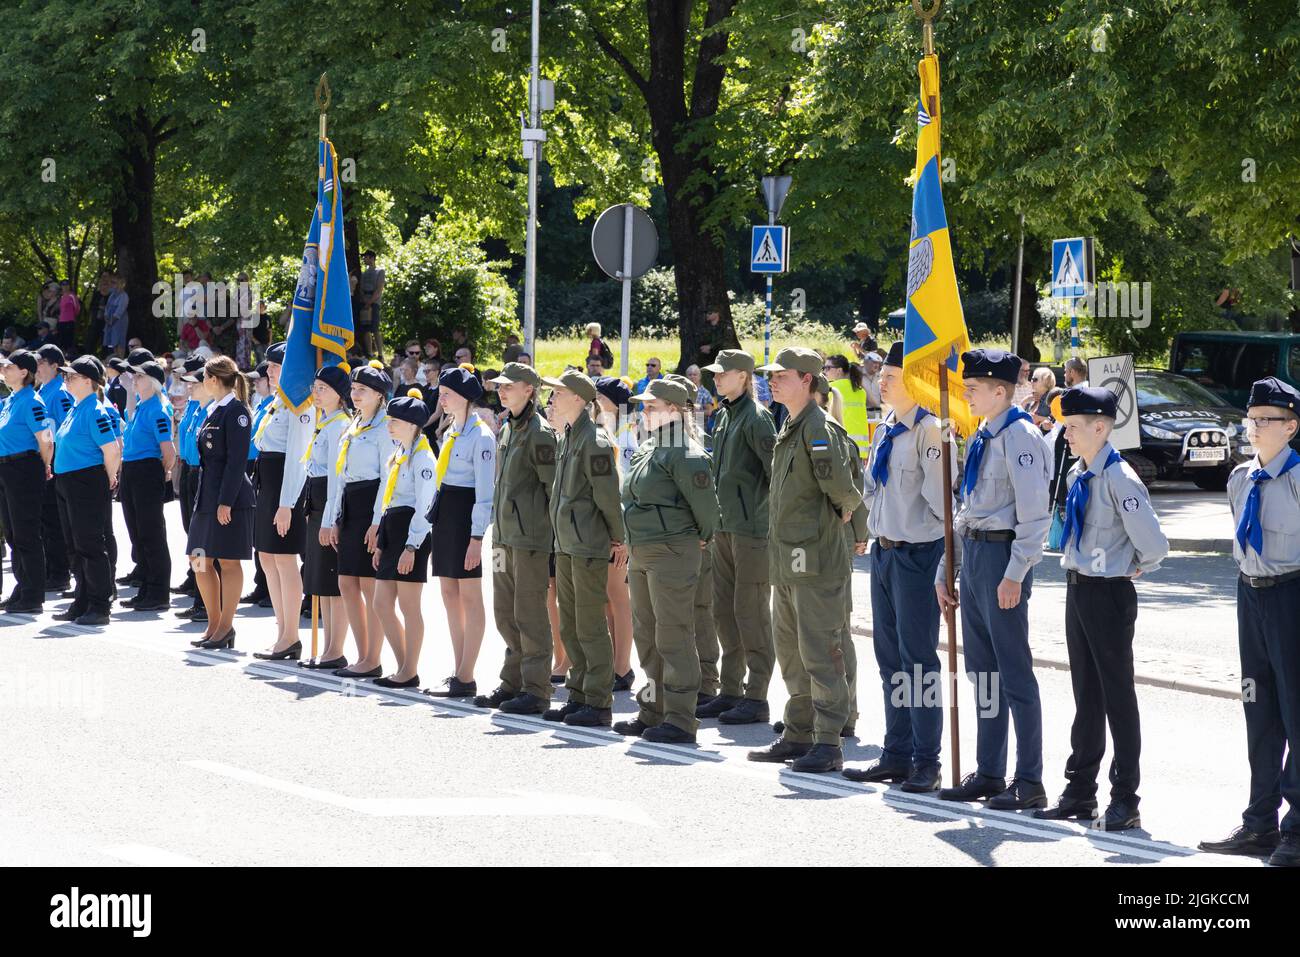 Soldats adolescents; cadets de l'armée adolescents dans la Ligue de défense estonienne en parade le jour de la victoire; Tartu, Estonie Europe Banque D'Images